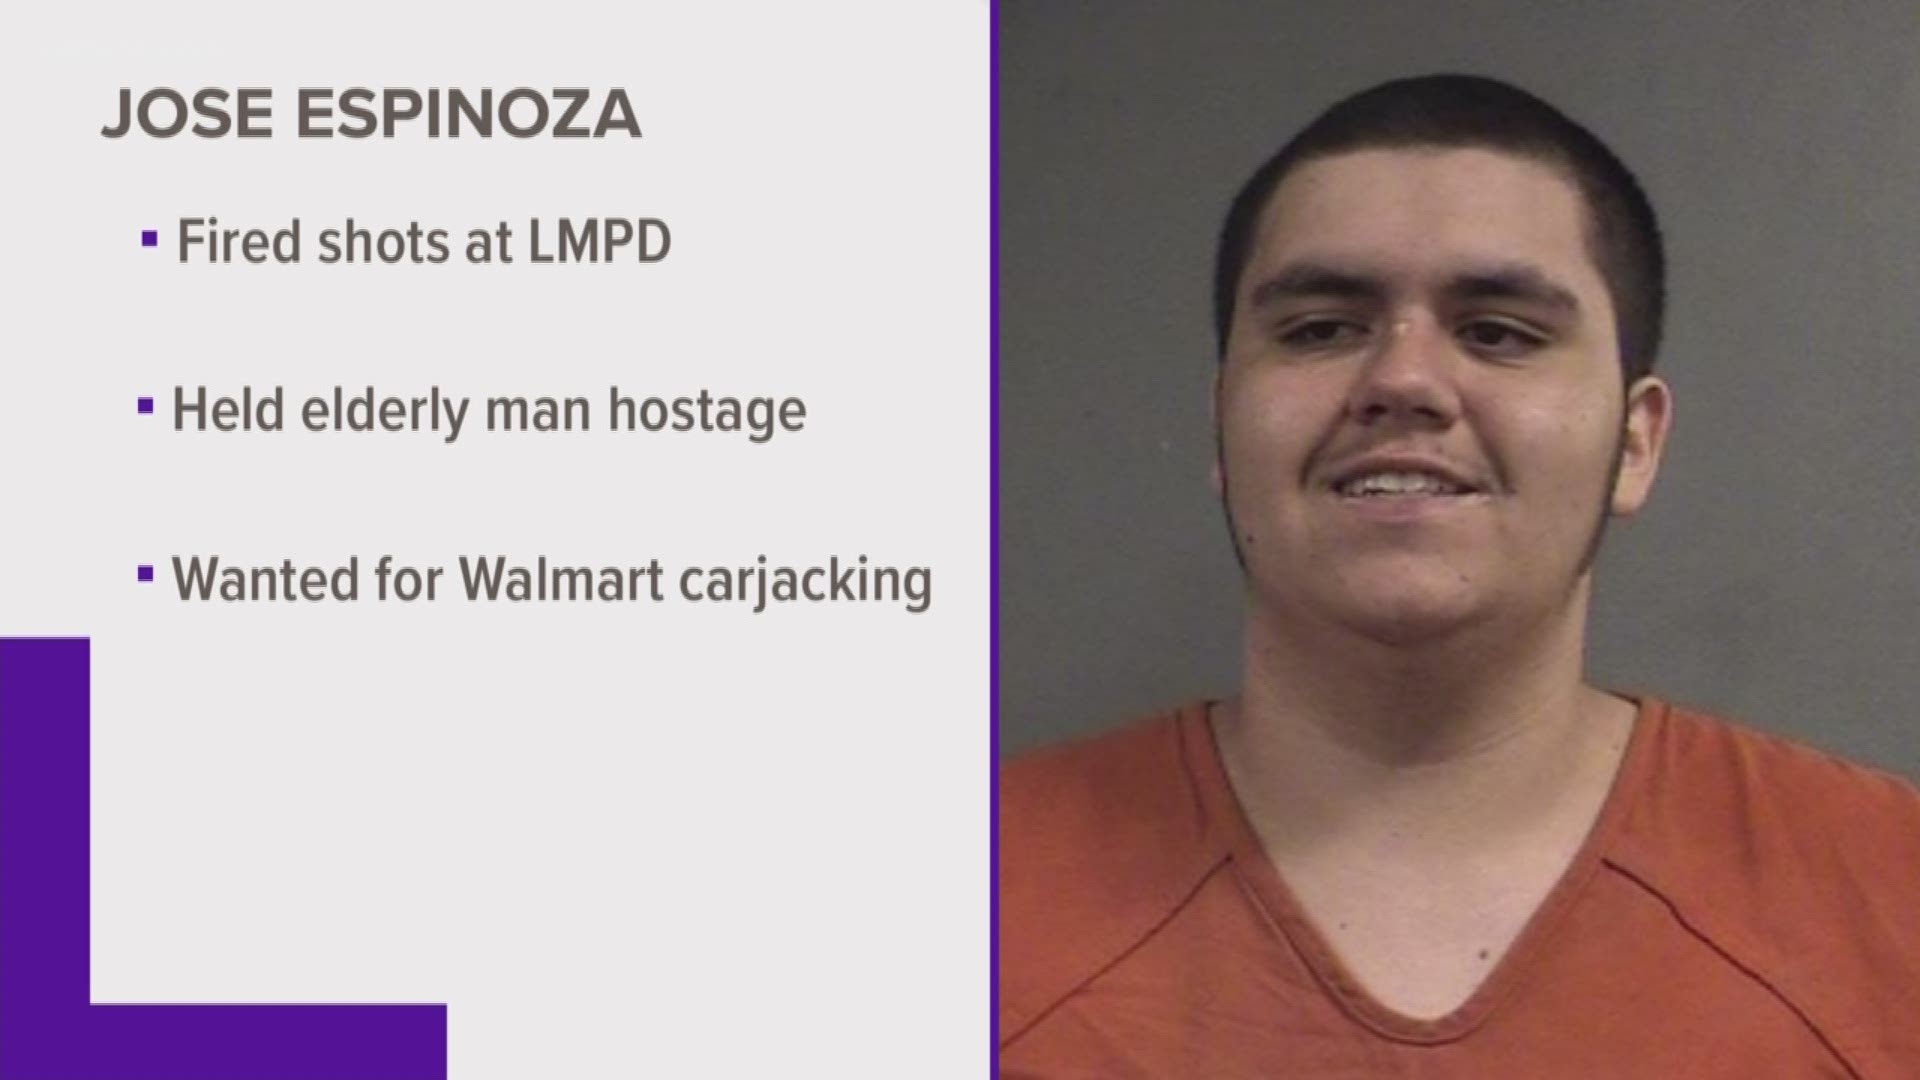 Espinoza is responsible for carjacking a woman at gunpoint at an Outer loop Walmart parking lot Aug.1